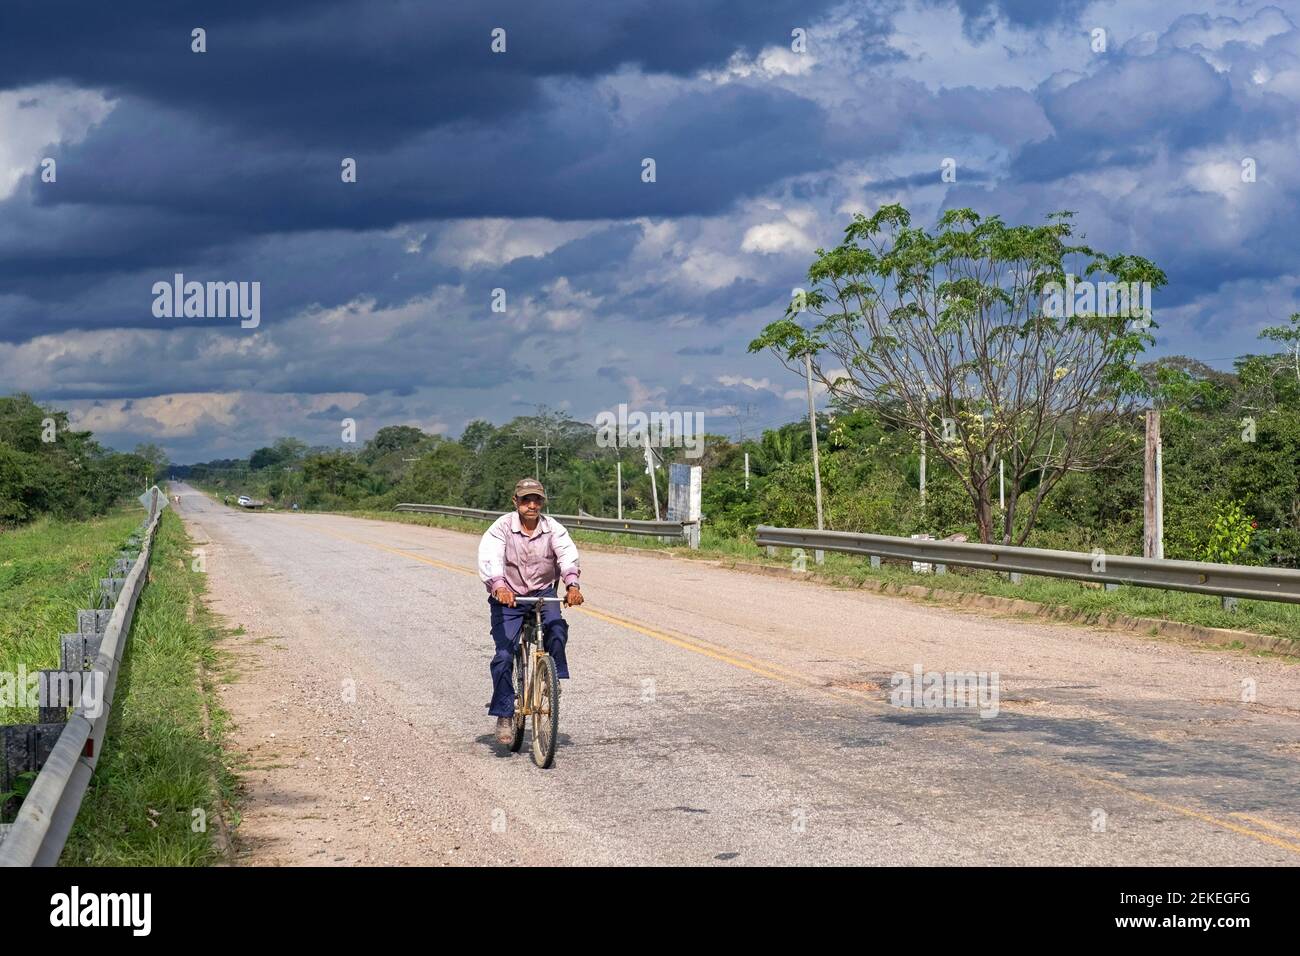 Homme bolivien âgé à vélo le long de la route Ruta Nacional 9 / RN 9 en Amazonie, province de Marbán, département de Beni, Bolivie Banque D'Images